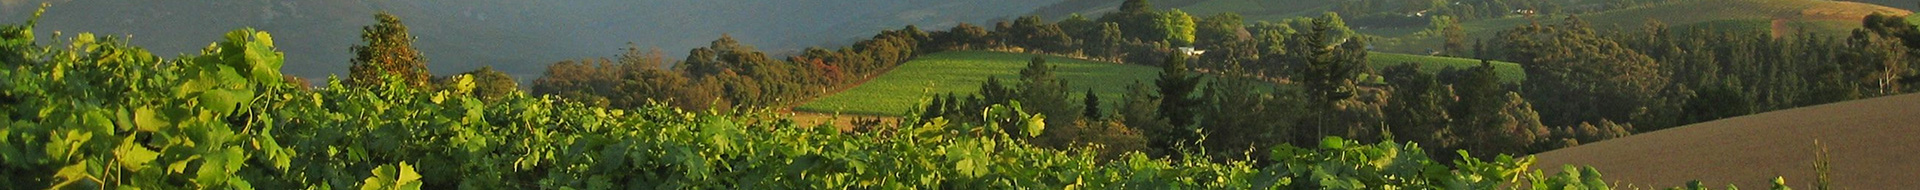 Wildeberg Wines